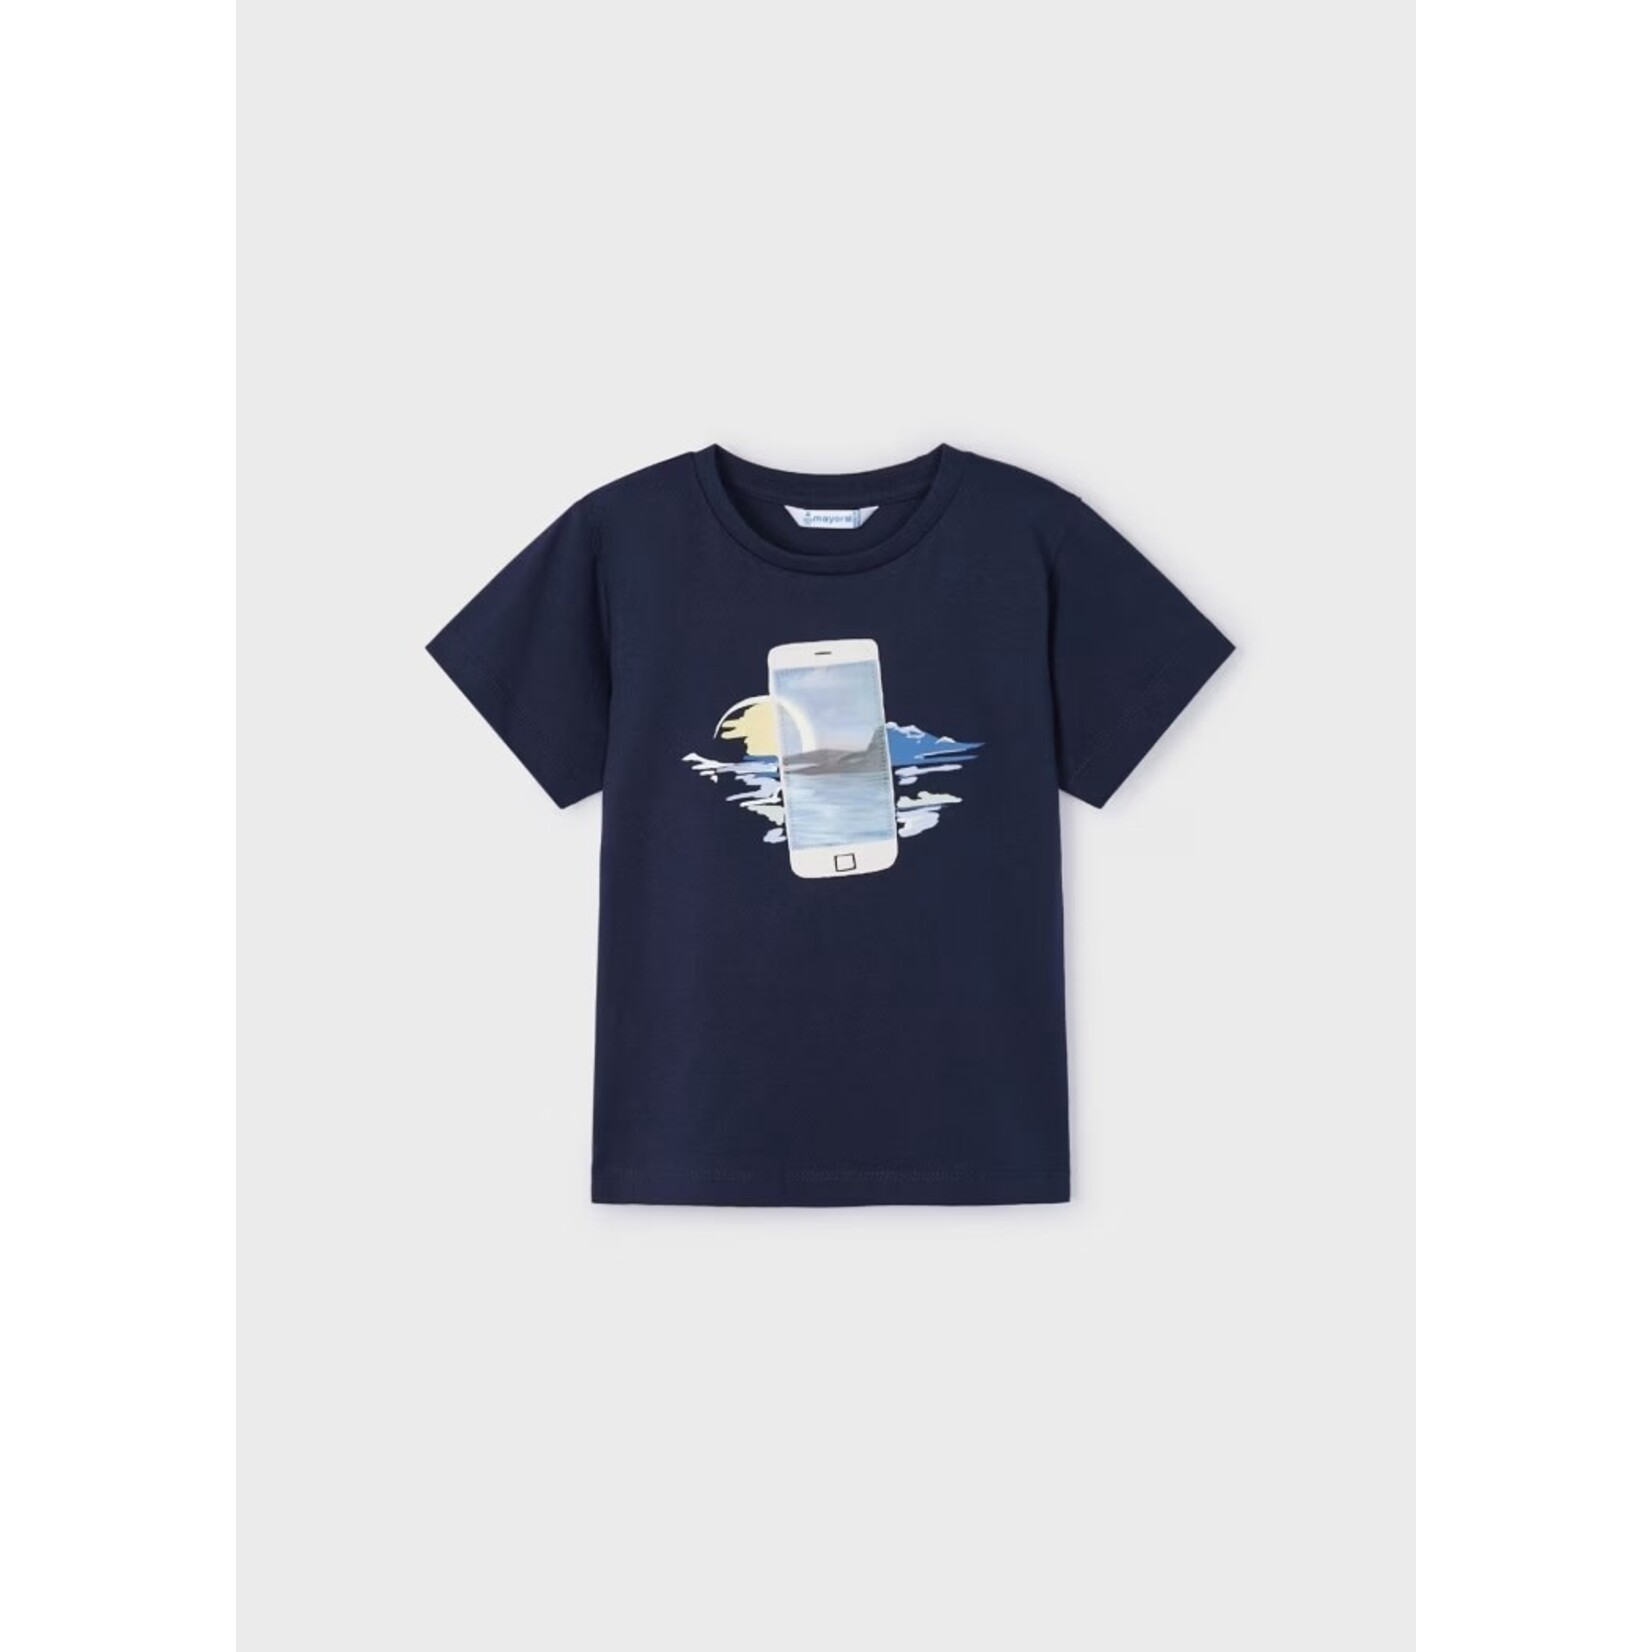 Mayoral MAYORAL - T-shirt à manches courtes bleu marine avec imprimé de photographie d'un paysage